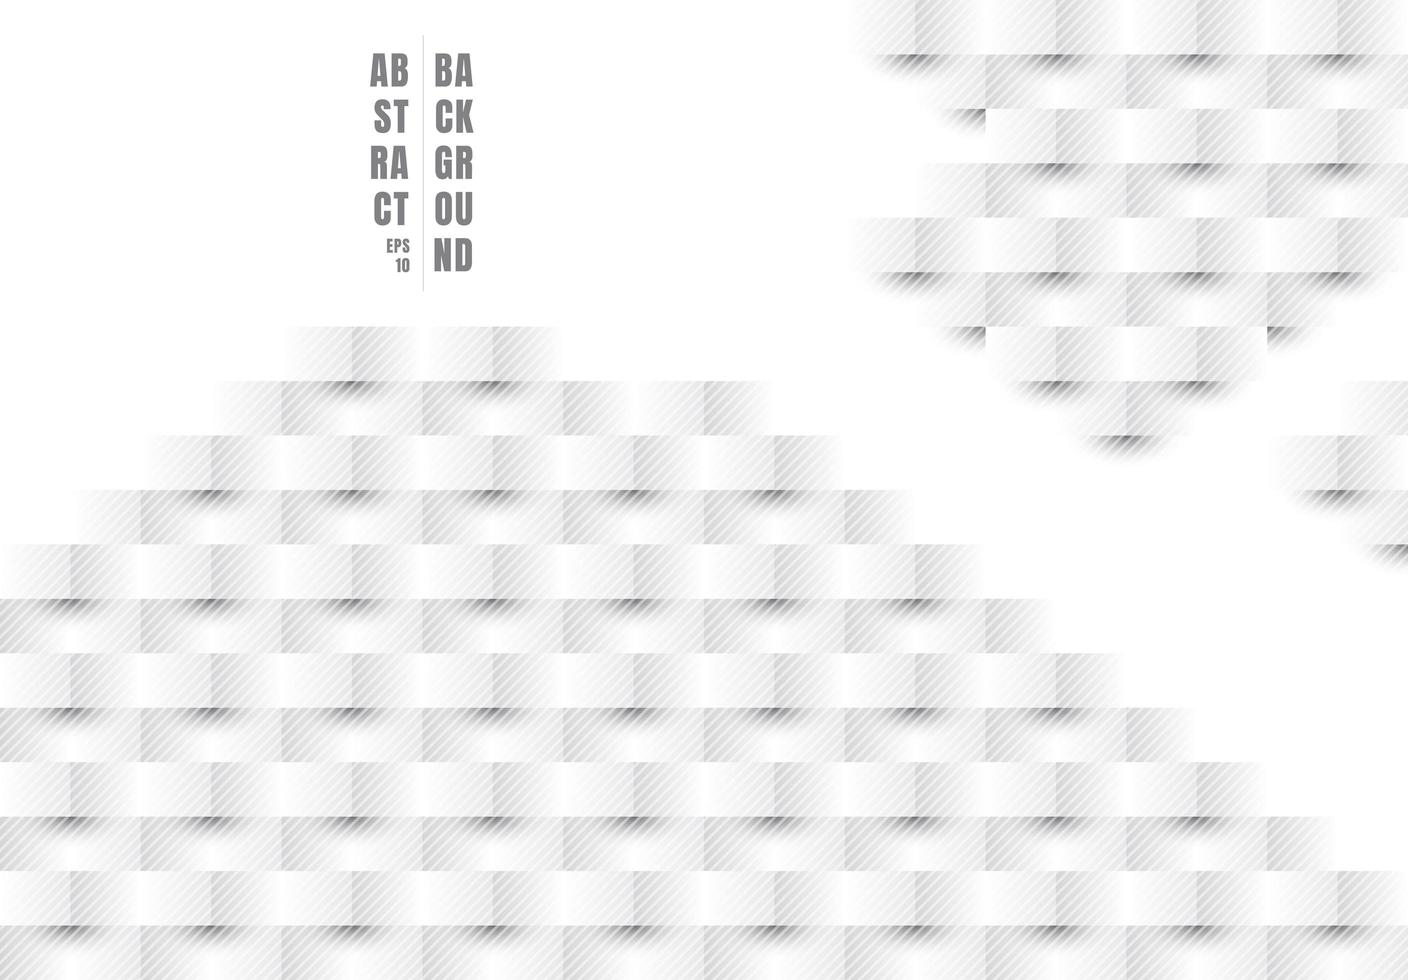 abstracte 3d papier kunststijl witte en grijze rechthoek patroon diagonale lijnen textuur vector